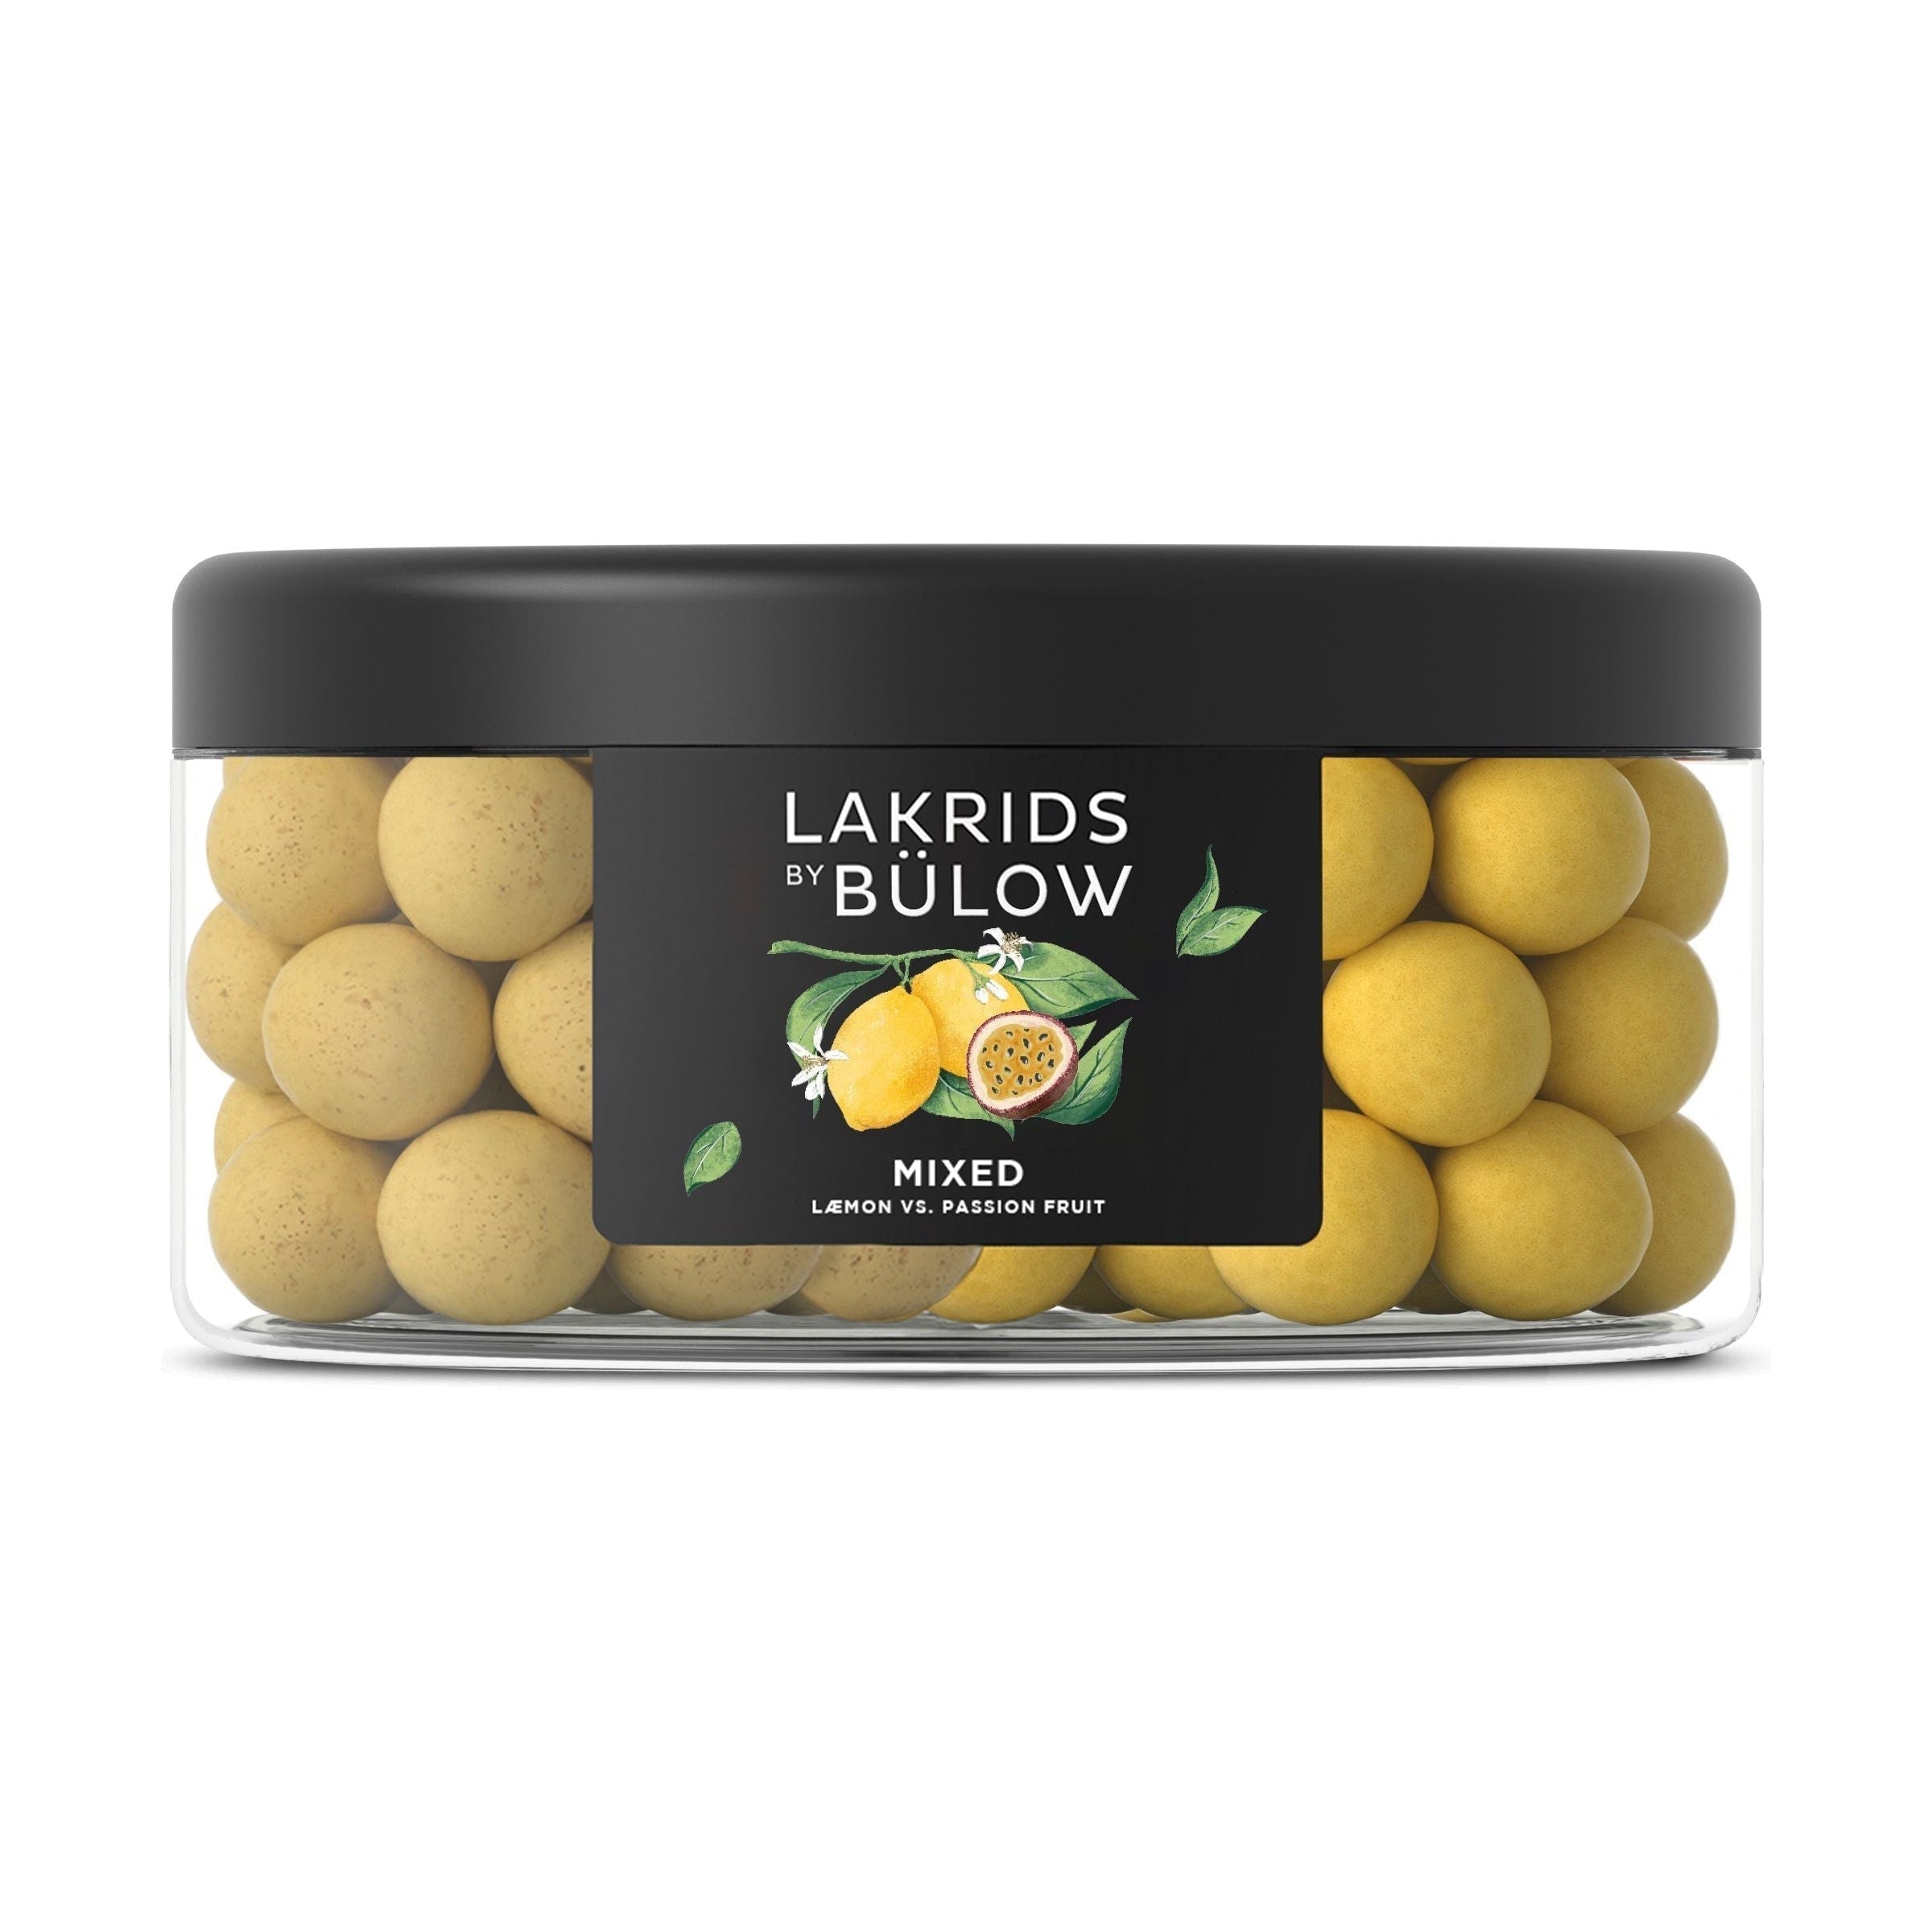 Lakrids by Bülow Læmon blandet, 550 g